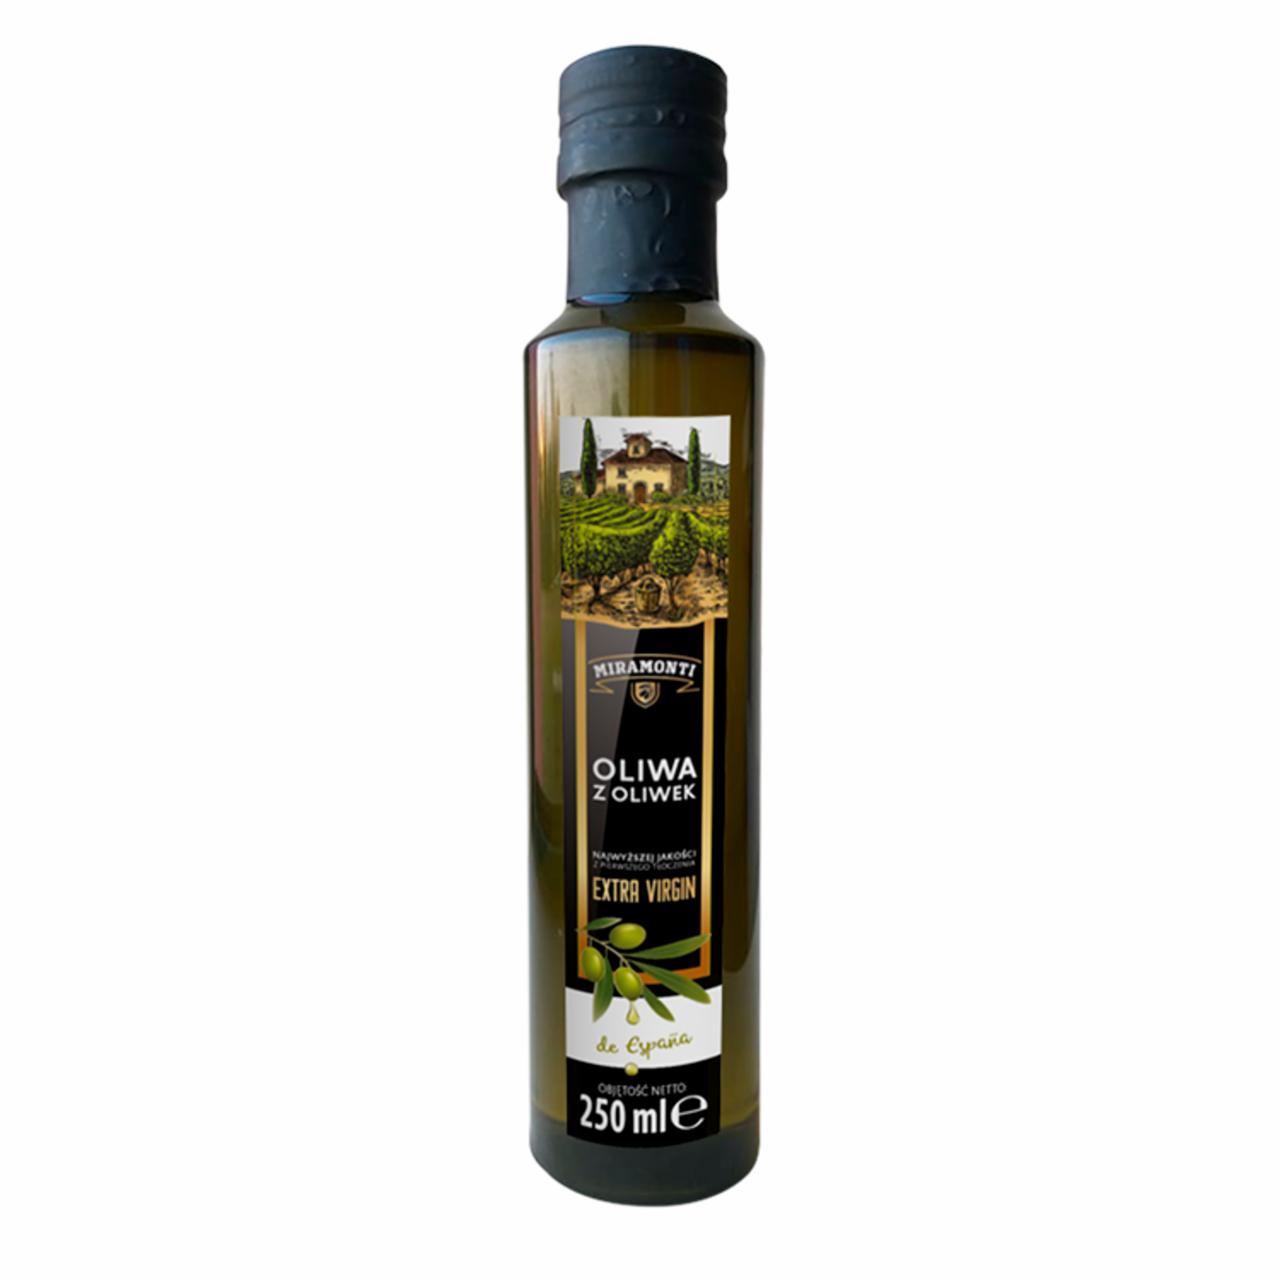 Zdjęcia - Miramonti Oliwa z oliwek najwyższej jakości z pierwszego tłoczenia 250 ml